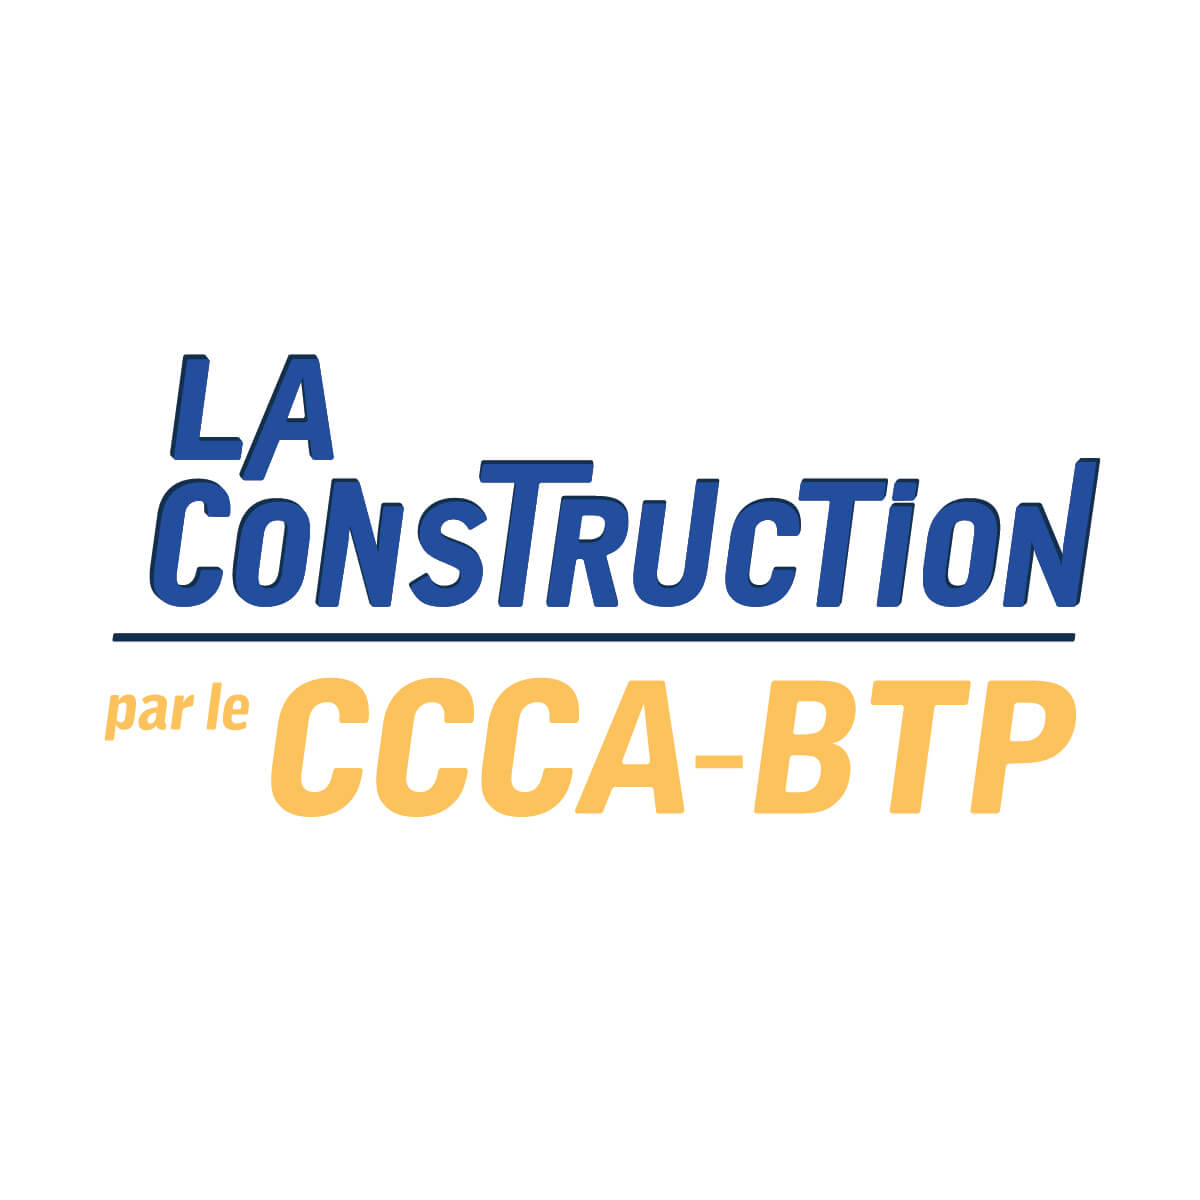 La Construction par le CCCA-BTP